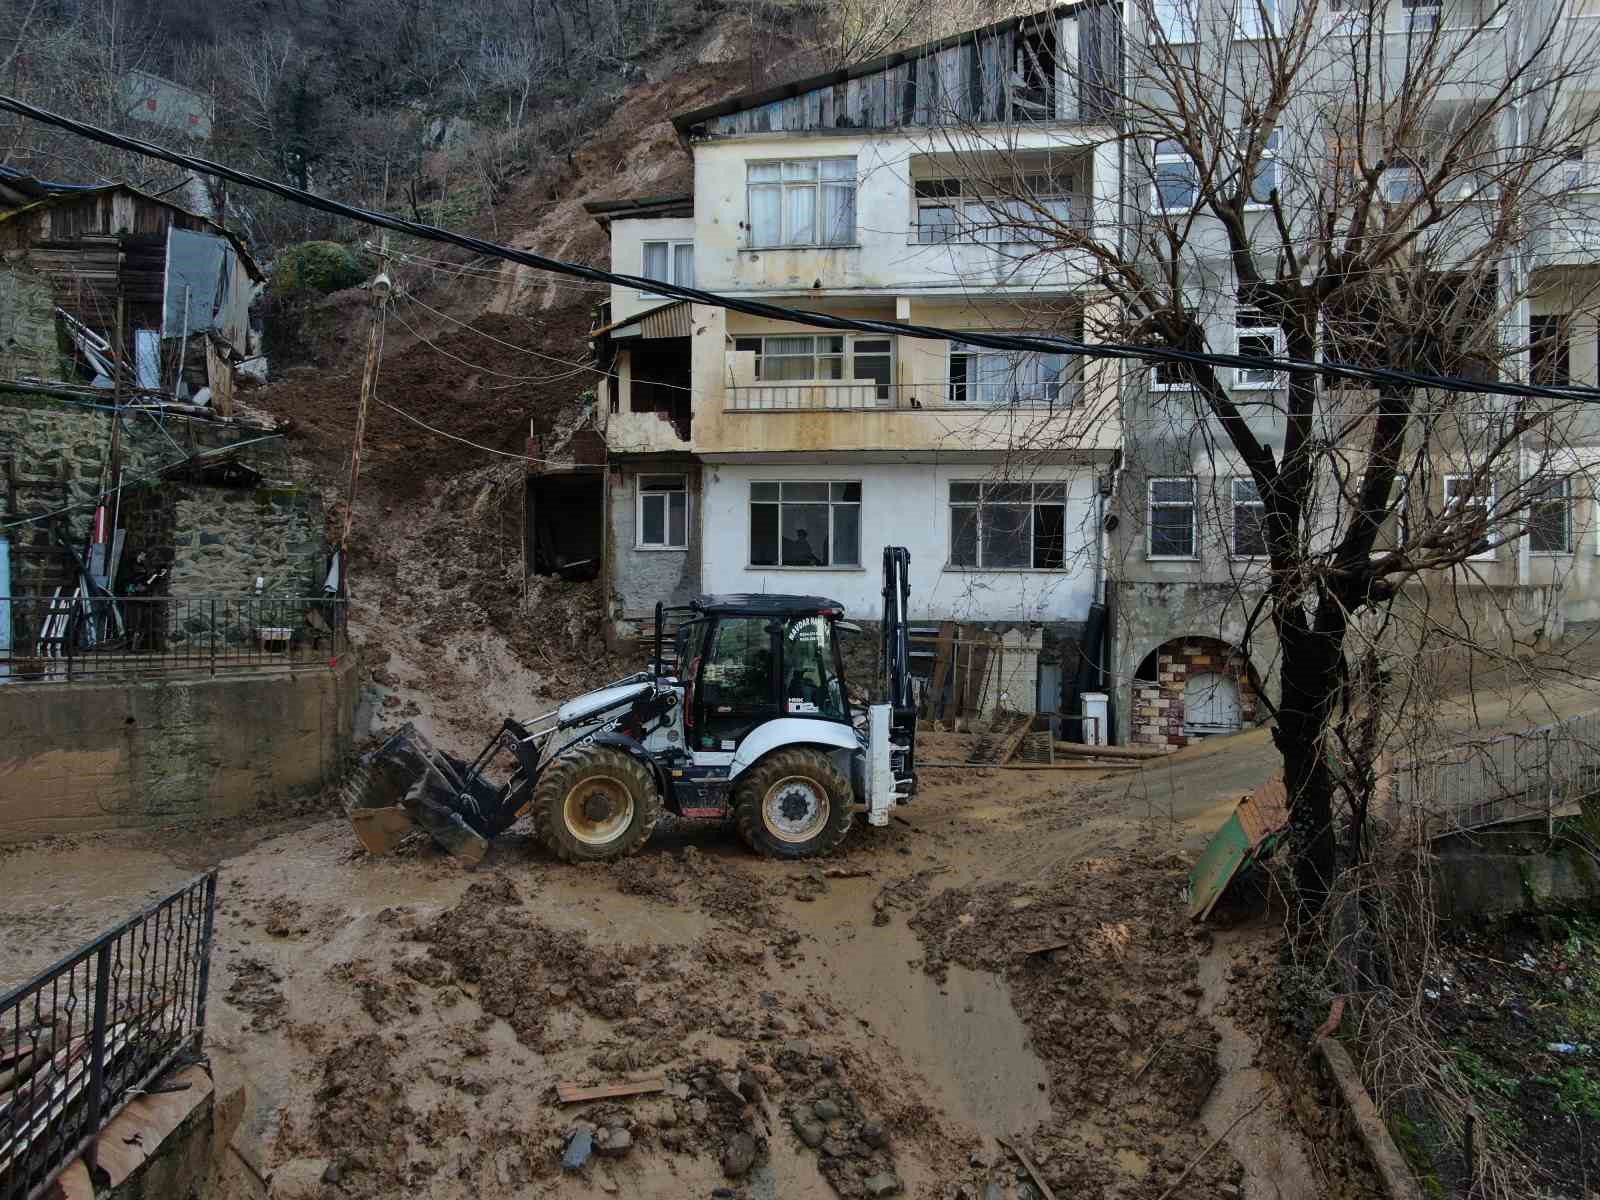 artvinde yamactan kopan topraklar evlerin icerisine doldu 10 bina zarar gordu 5